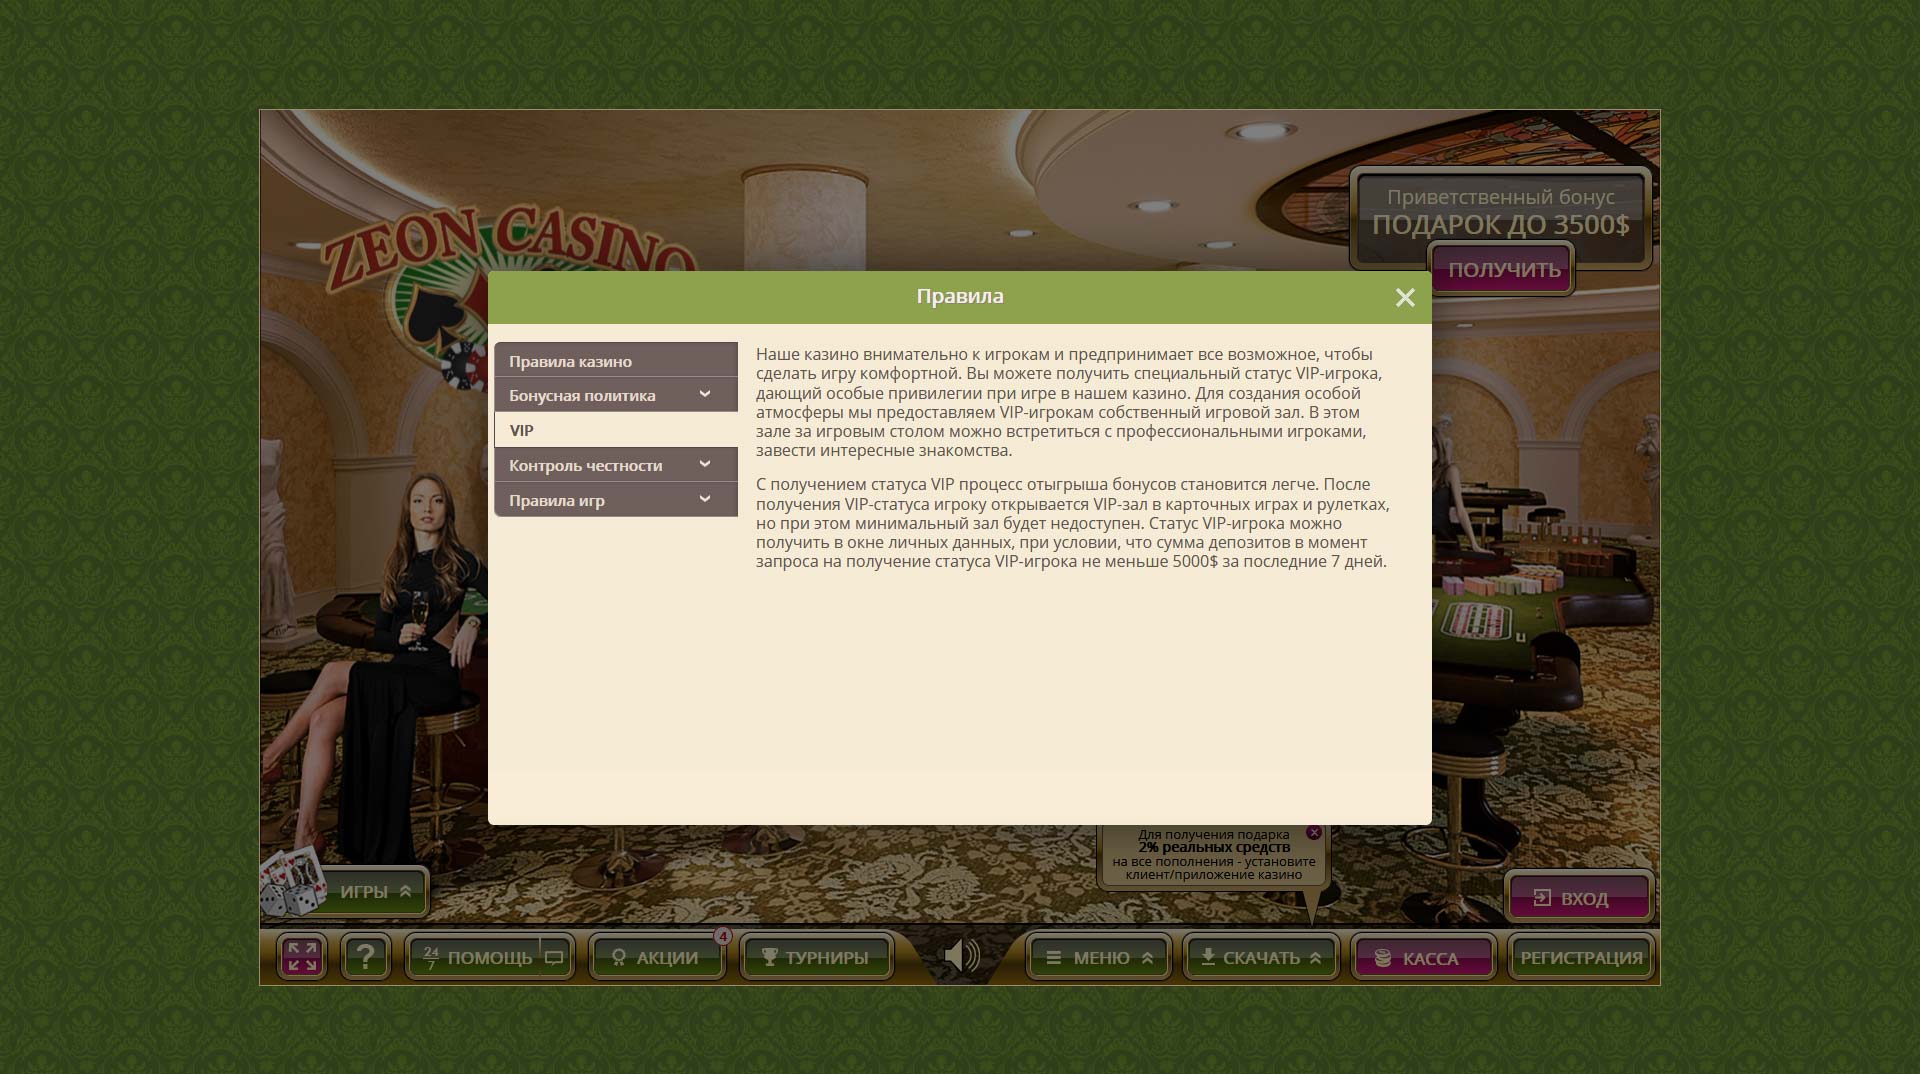 Зеон казино онлайн вход gg bet официальный сайт игровые автоматы